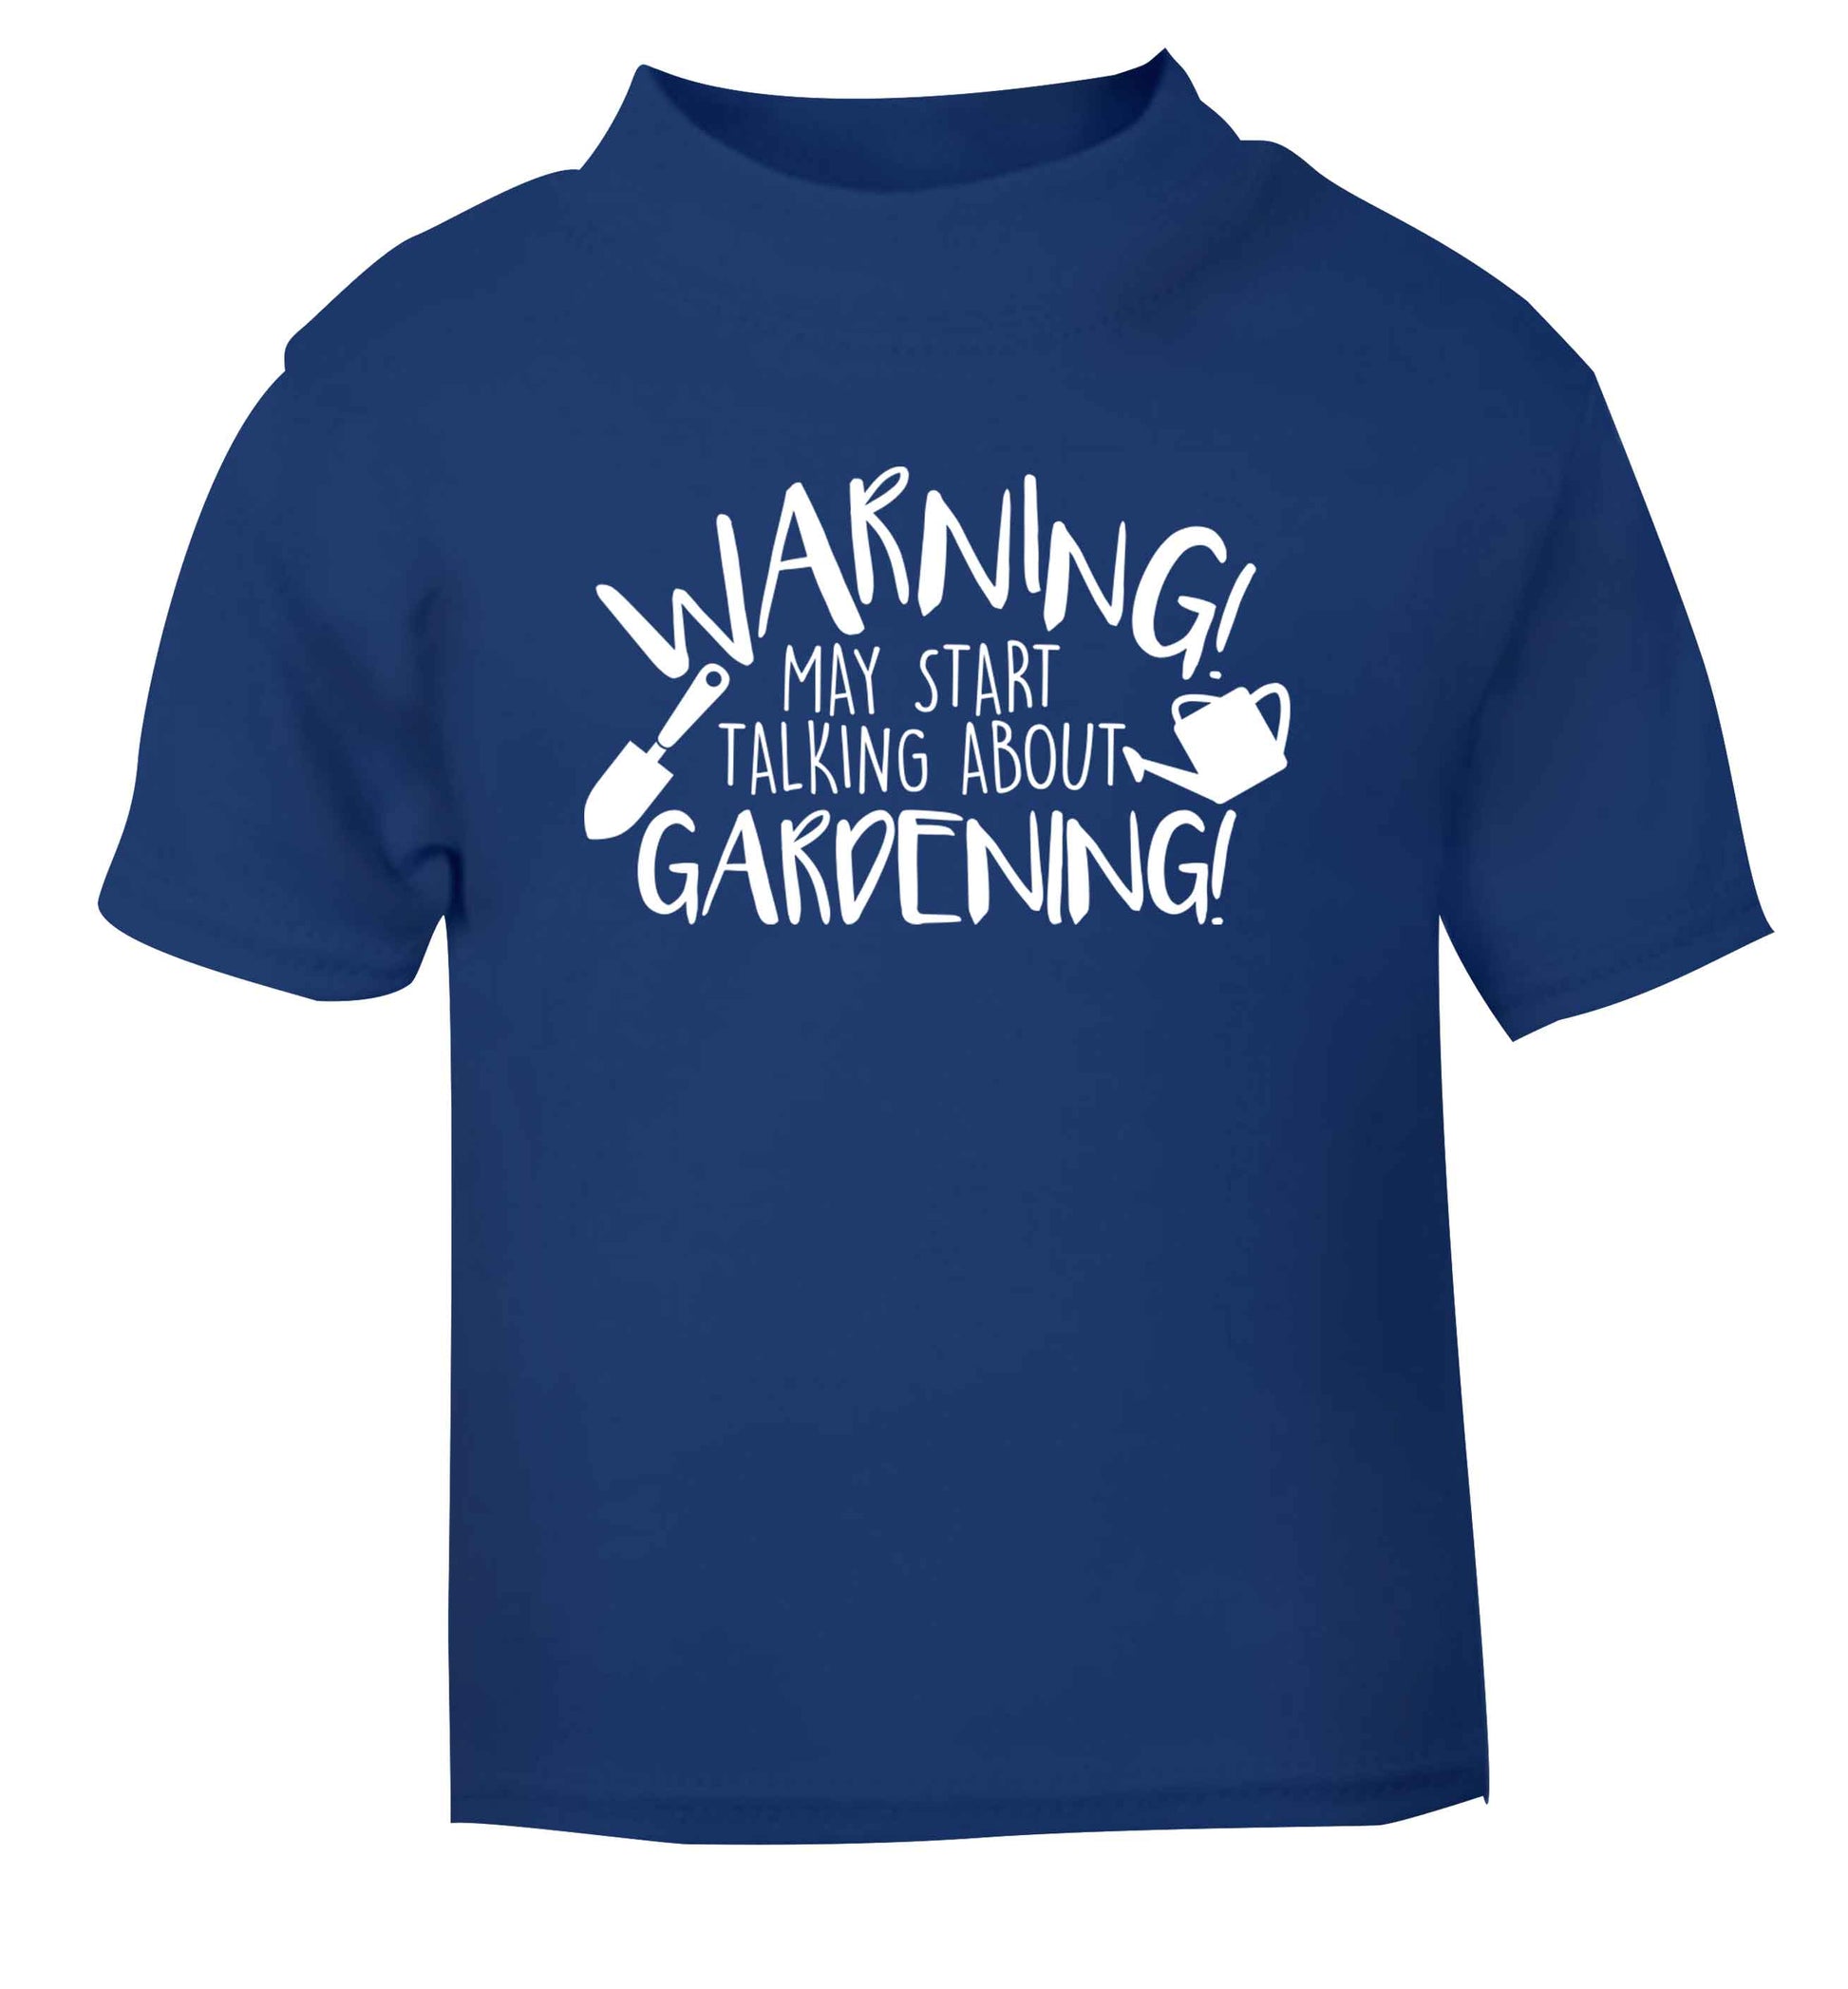 Warning may start talking about gardening blue Baby Toddler Tshirt 2 Years